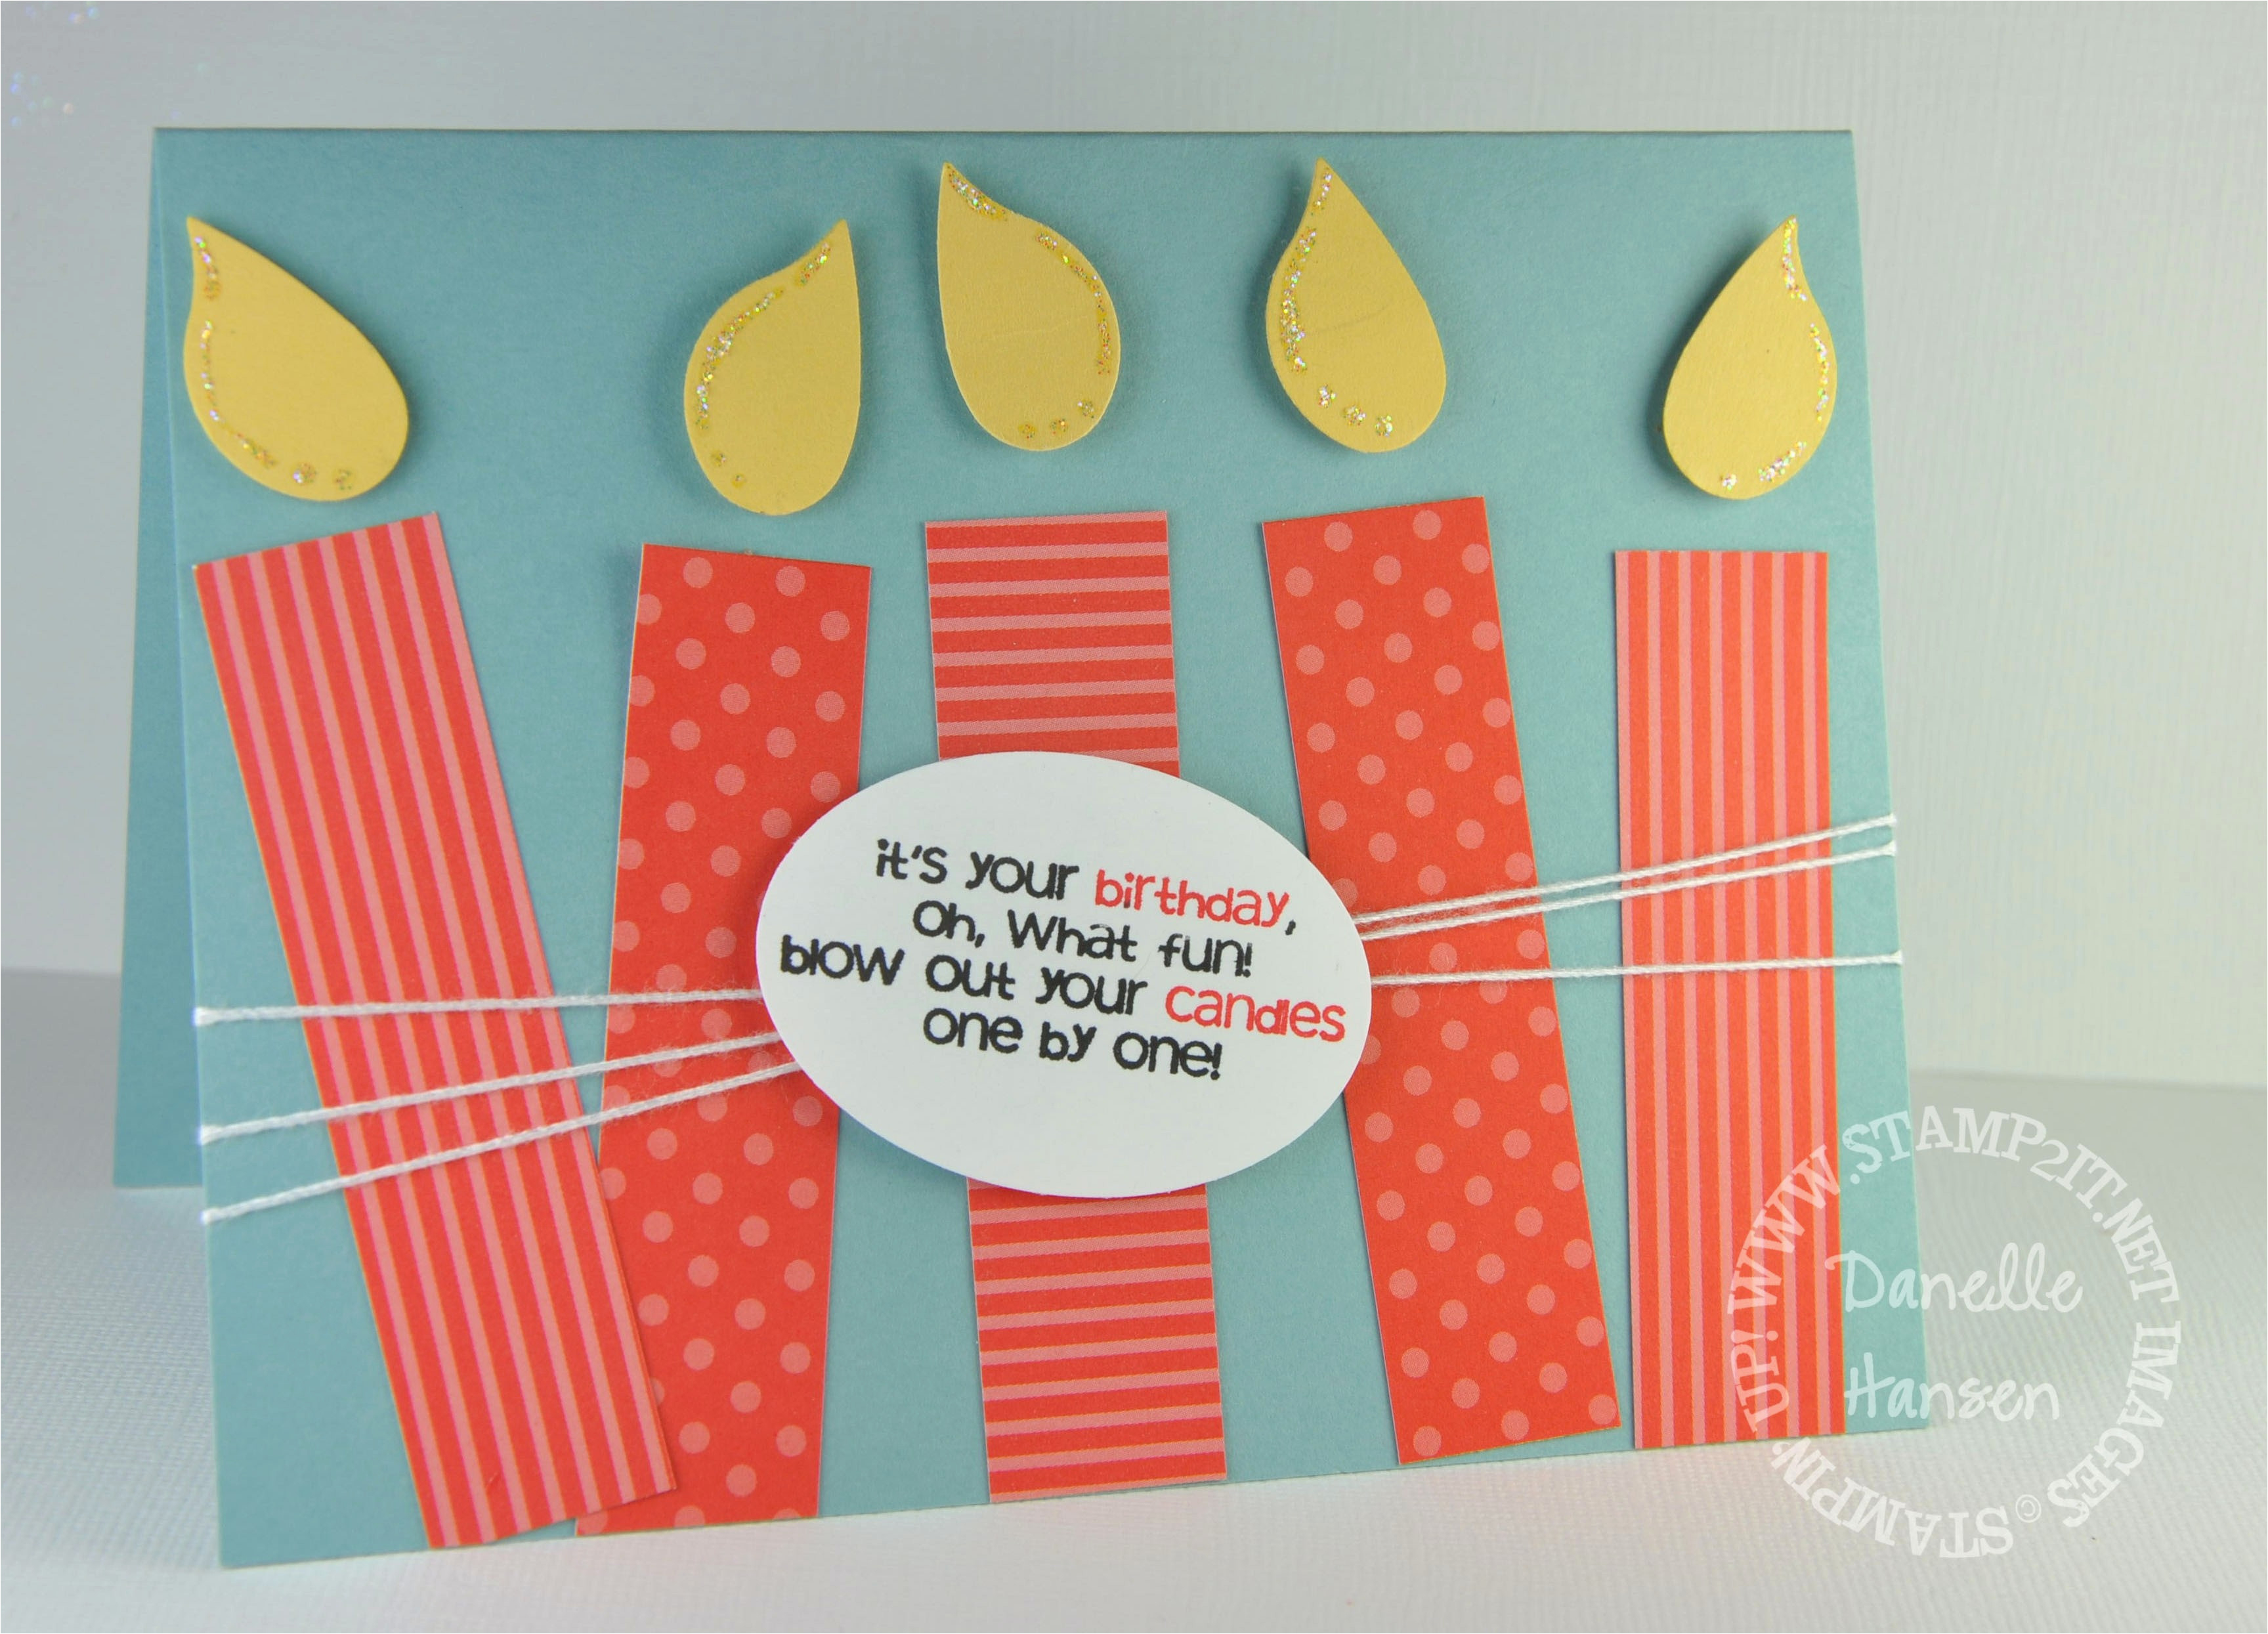 Handmade Birthday Cards Ideas Diy Birthday Cards For Husband Creative Handmade Birthday Card Ideas